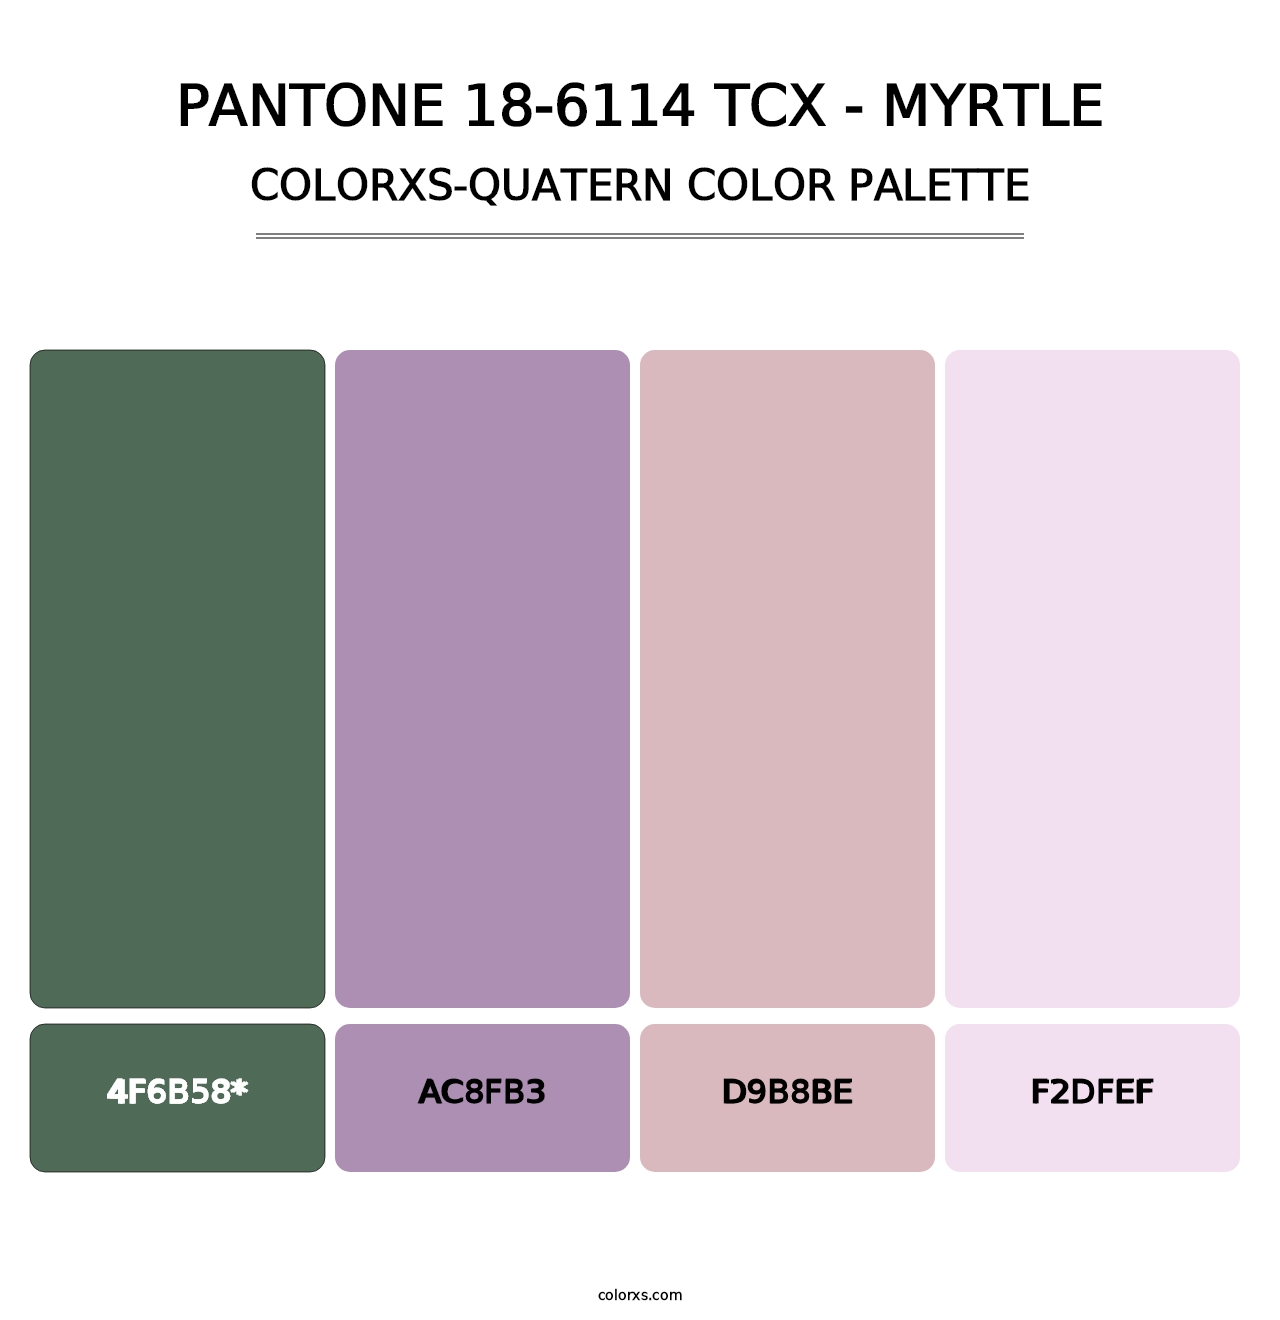 PANTONE 18-6114 TCX - Myrtle - Colorxs Quatern Palette